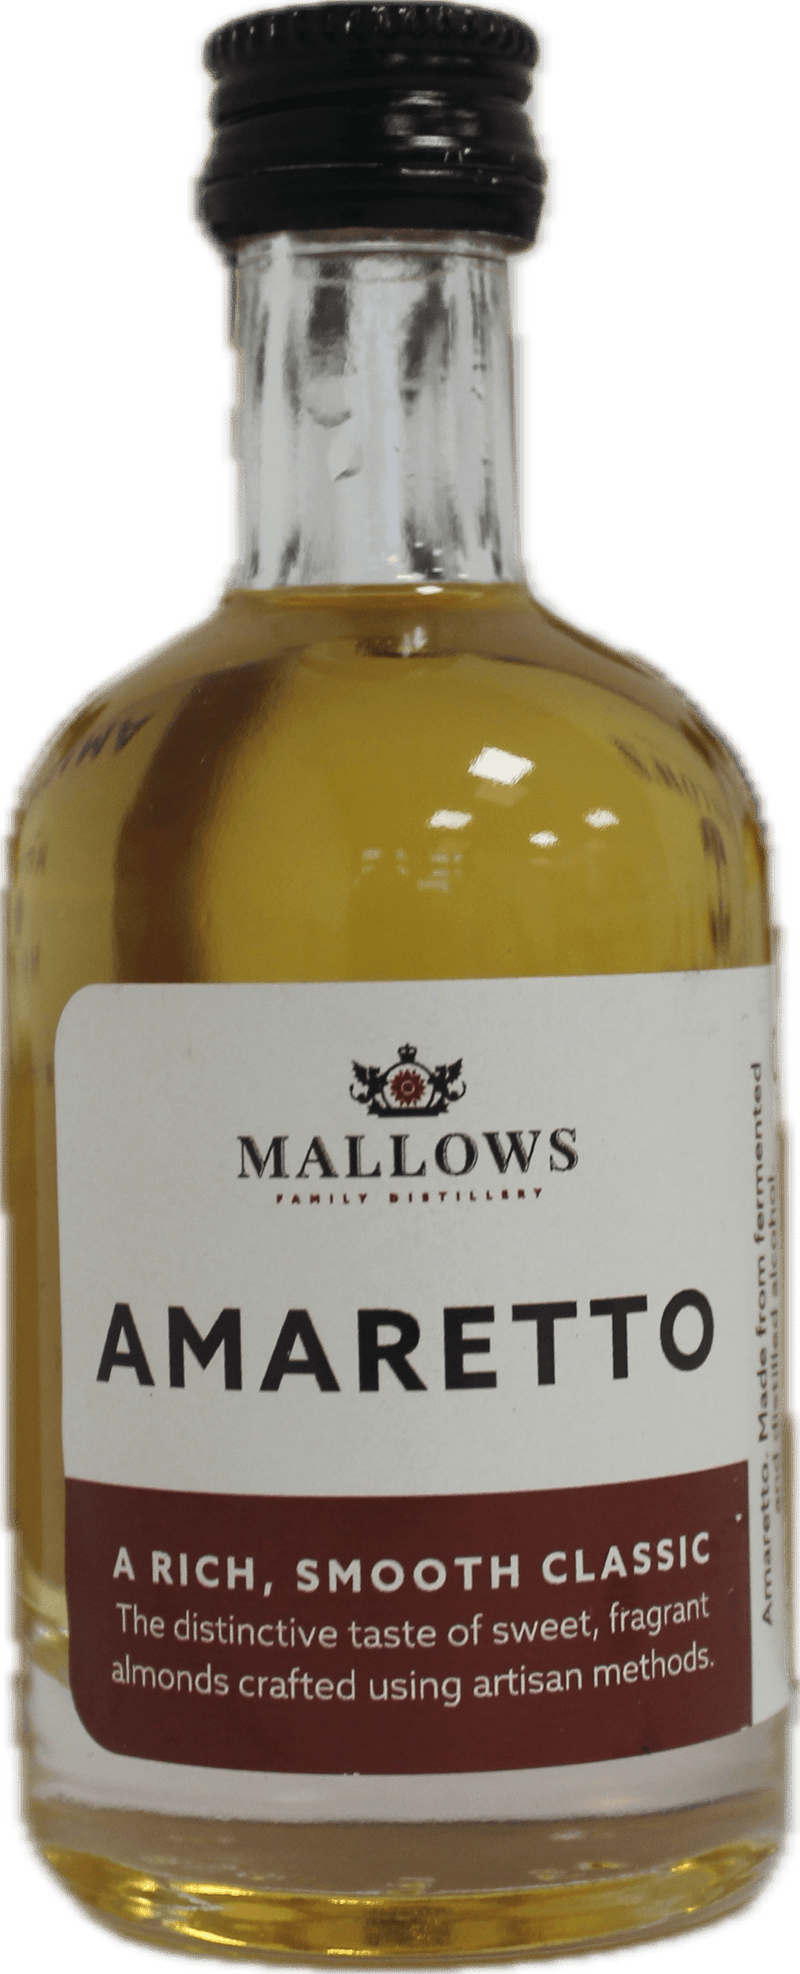 Mallows Amaretto Miniature 5cl